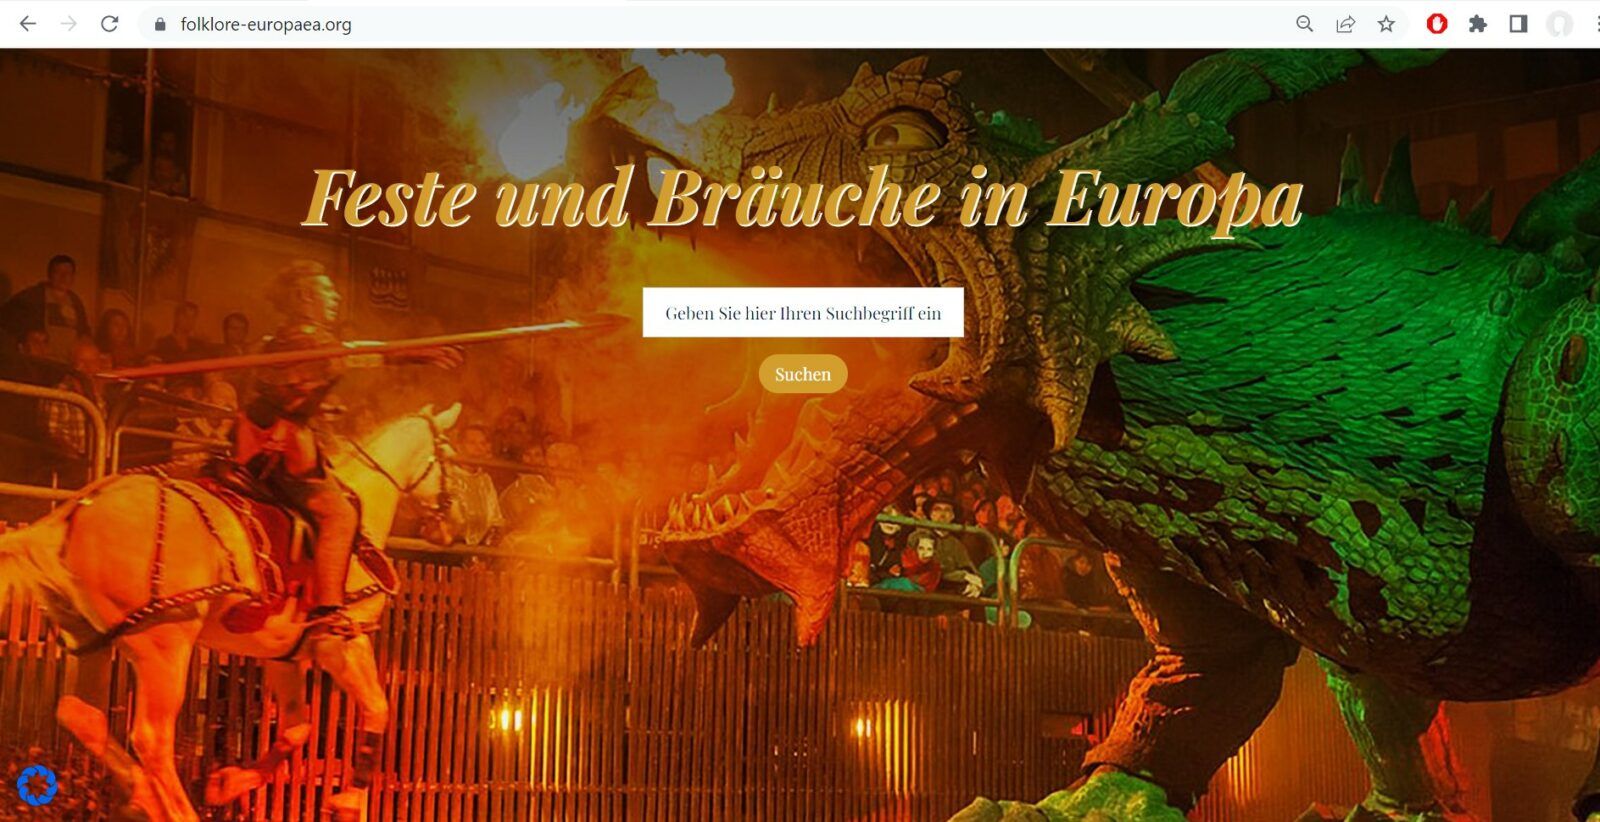 Auf der Startseite der Datenbank www.folklore-europaea.org kann ein Suchbegriff eingegeben werden. Die Suche kann über einen Ort, im Jahresverlauf oder nach einem Fest oder Thema erfolgen.